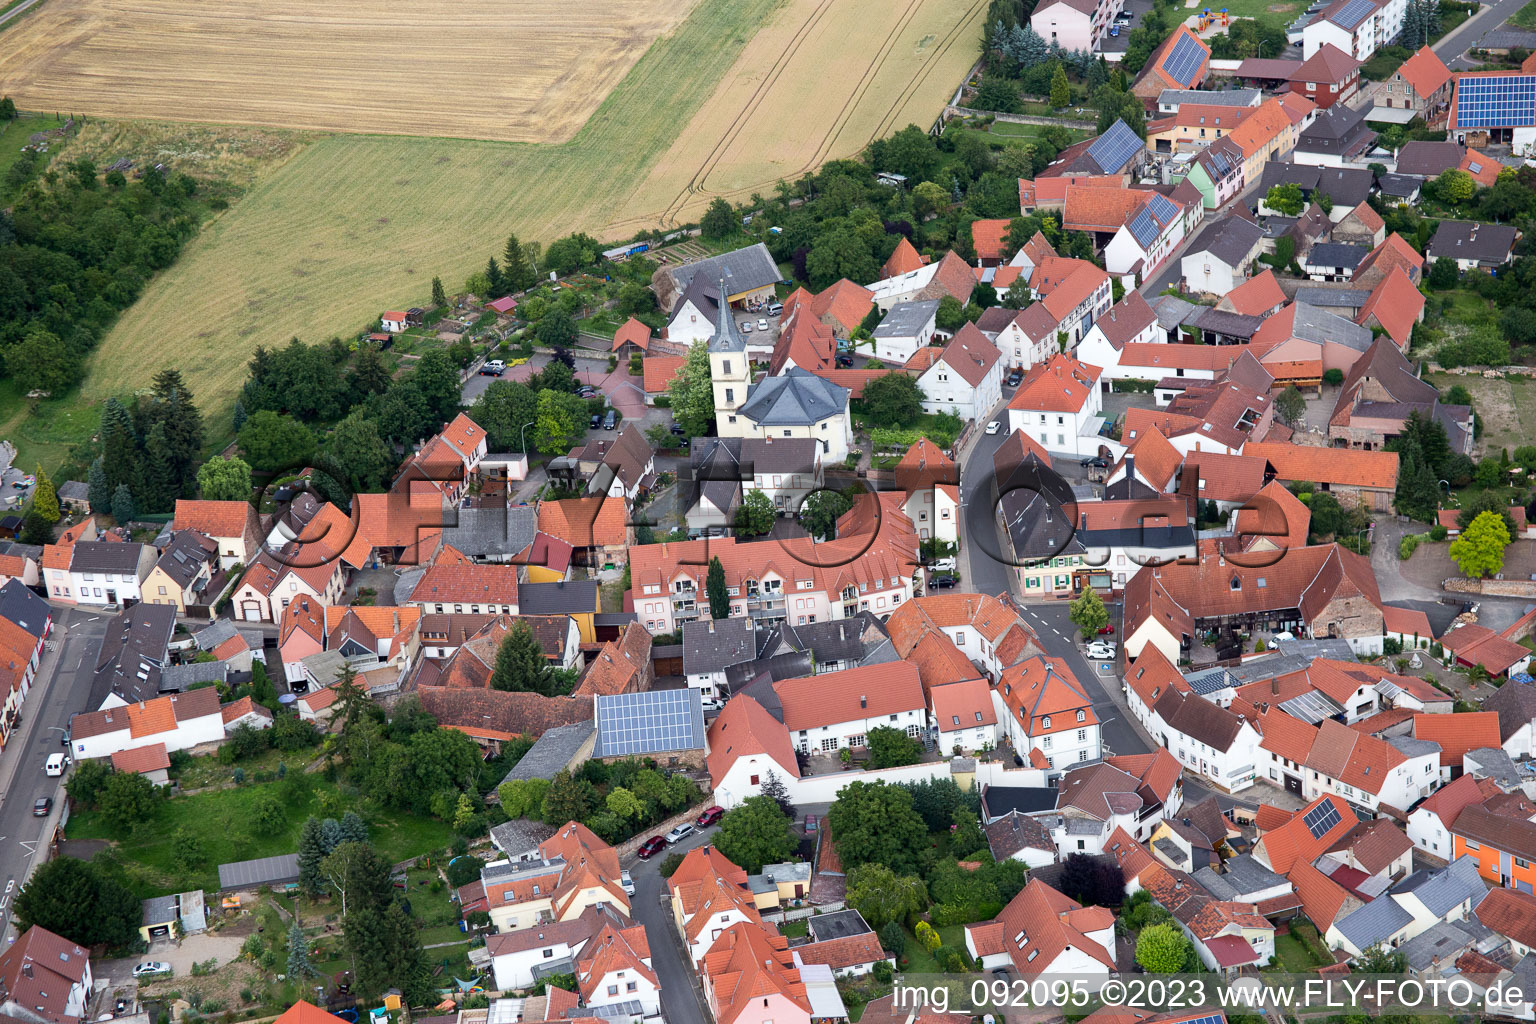 Kerzenheim im Bundesland Rheinland-Pfalz, Deutschland von oben gesehen